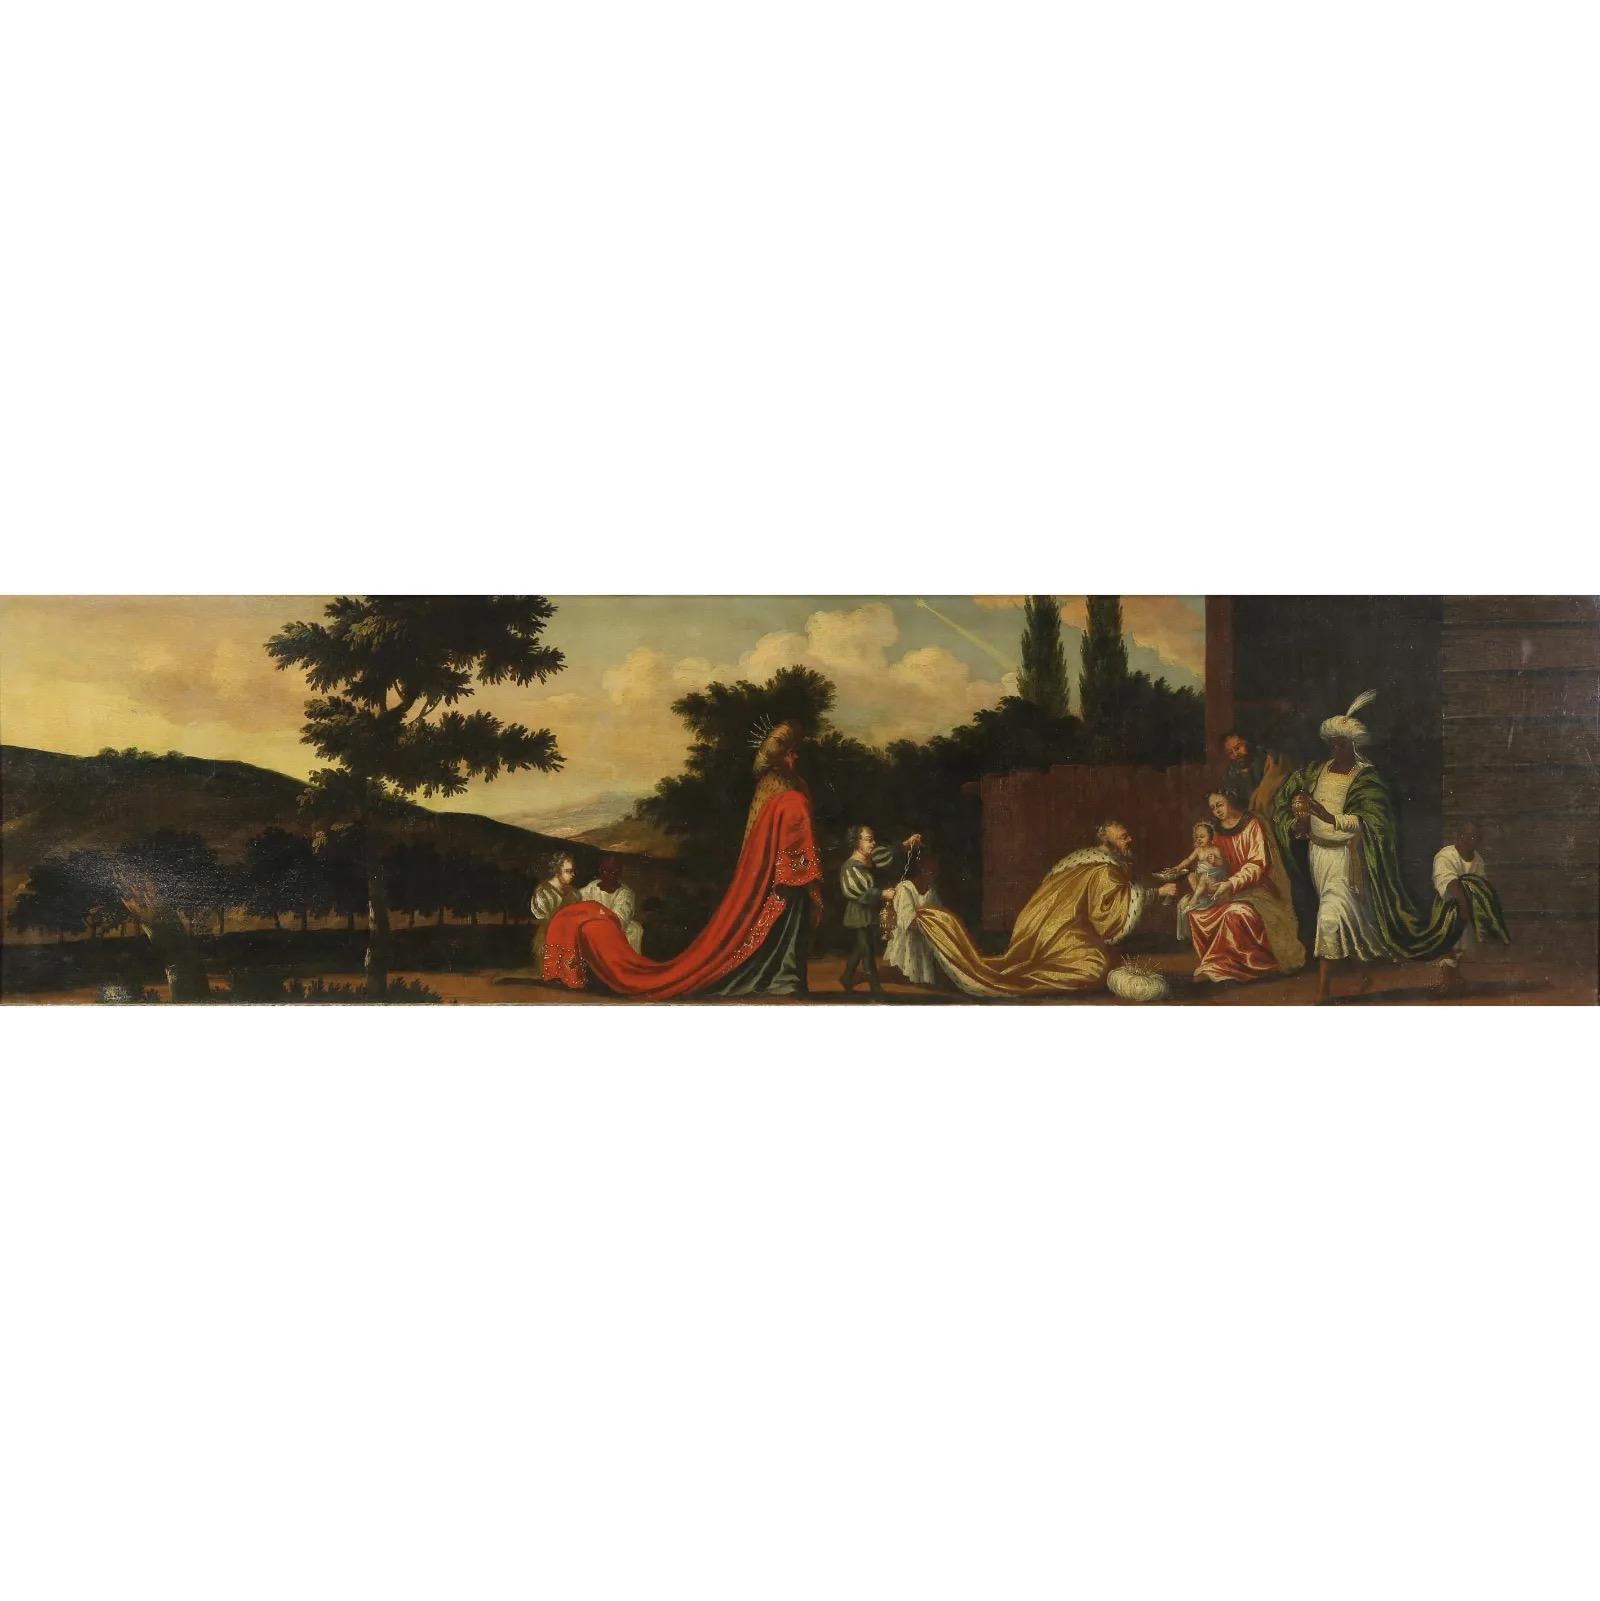 italienisch-flämisches Ölgemälde aus dem 17. Jahrhundert, das die Anbetung der Heiligen Drei Könige darstellt. Die frühe flämische Malerei war zeitgleich mit der Entwicklung der Frührenaissance in Italien. In der Mitte des 15. Jahrhunderts waren